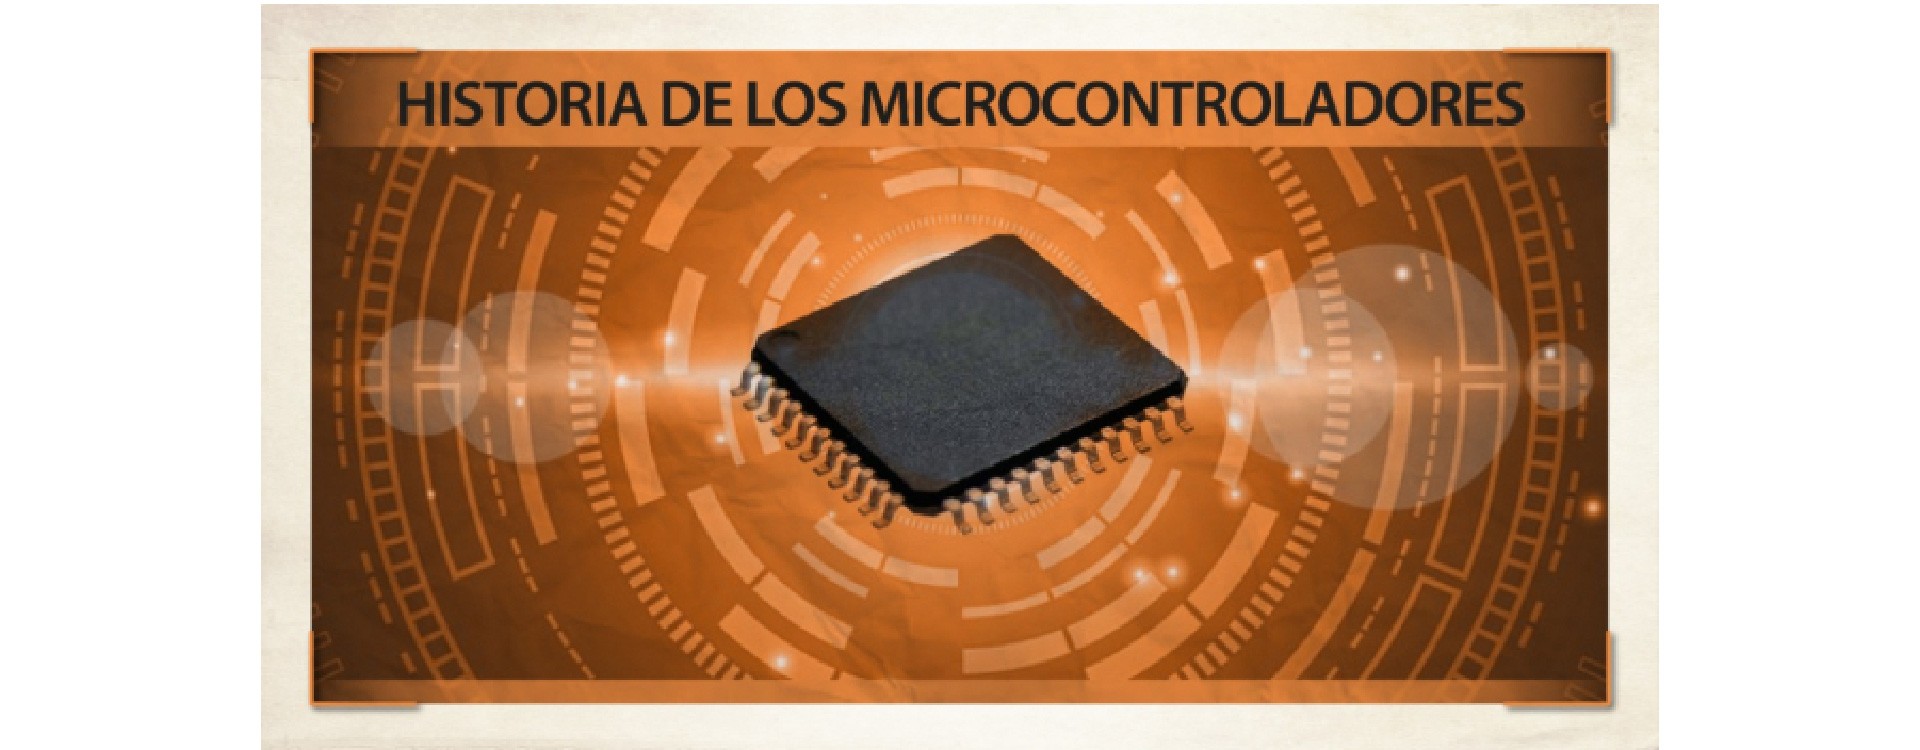 Historia de los Microcontroladores y sus Fabricantes